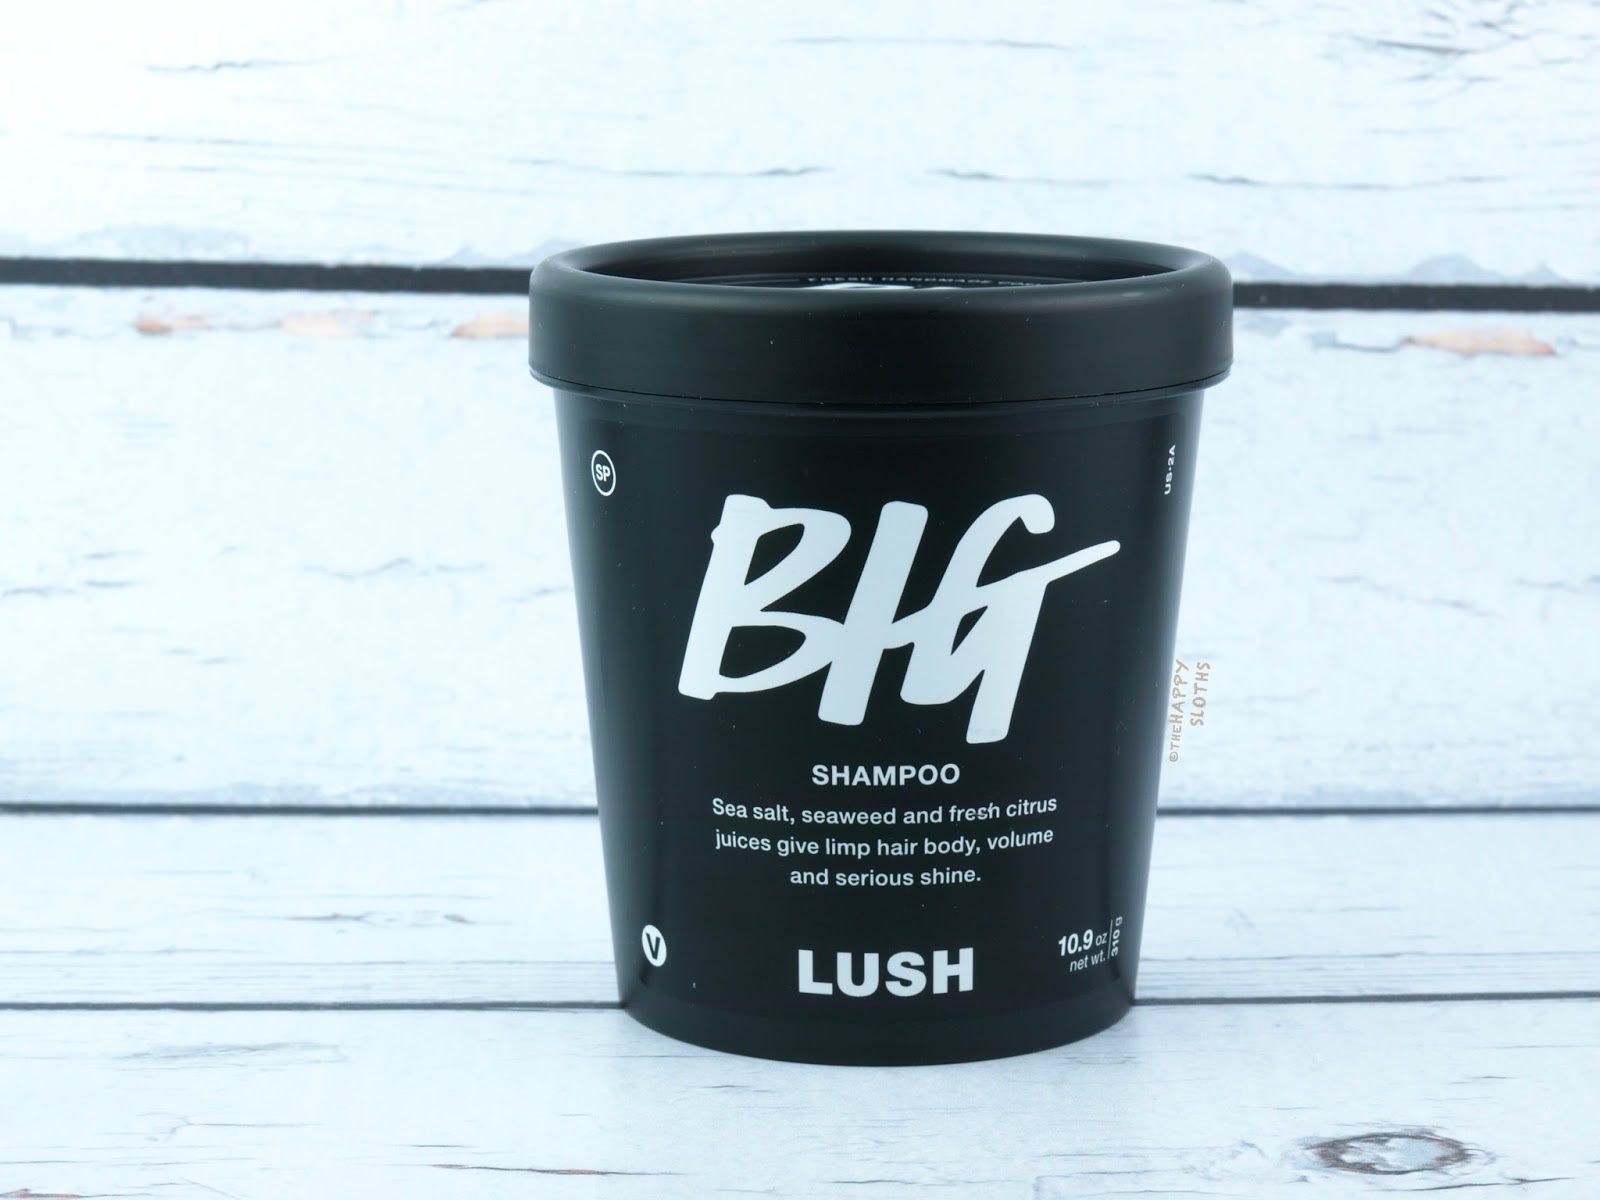 Lush Big Shampoo Review